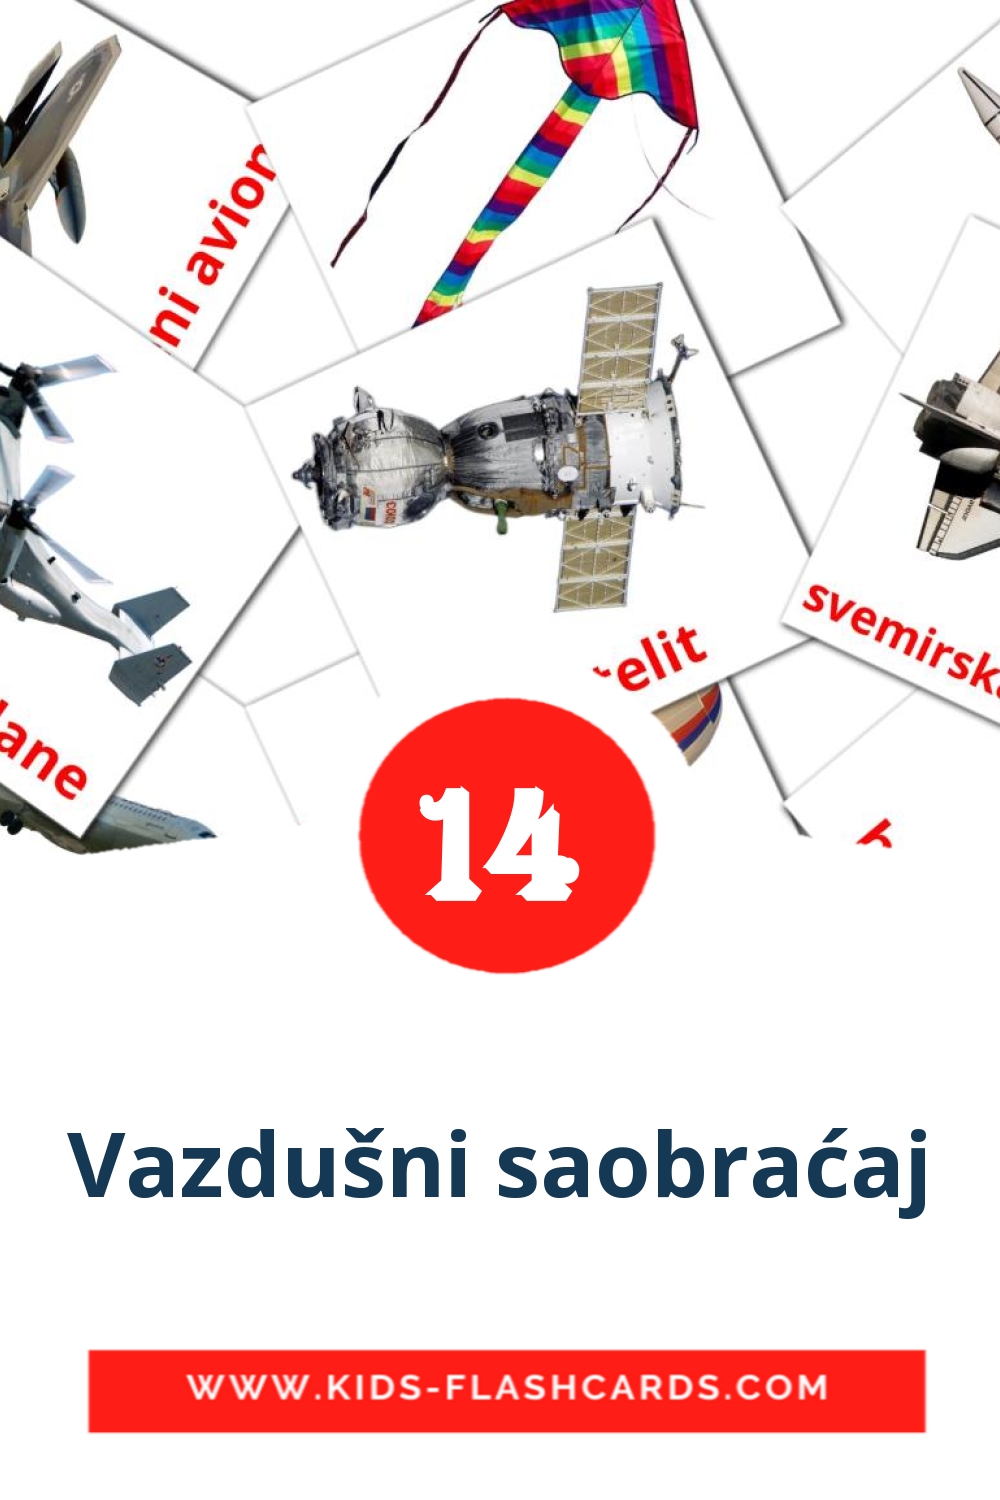 14 carte illustrate di Vazdušni saobraćaj per la scuola materna in serbo